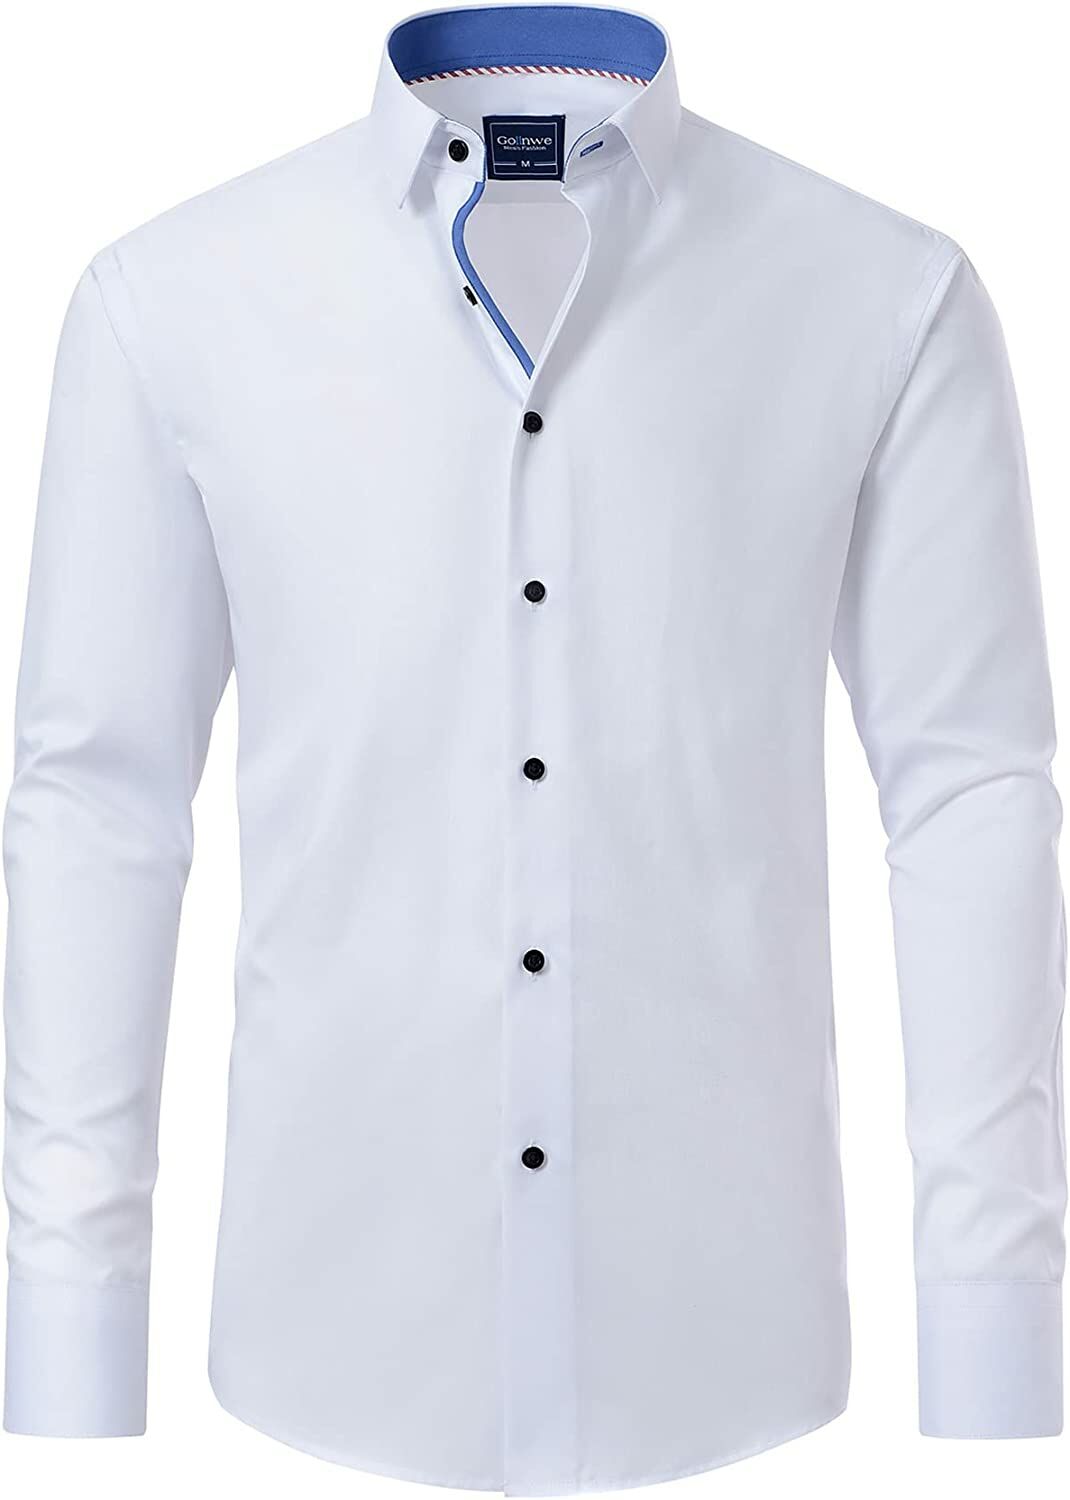 Garnitür Çizgili Erkek Premium Uzun Kollu Gömlek Beyaz